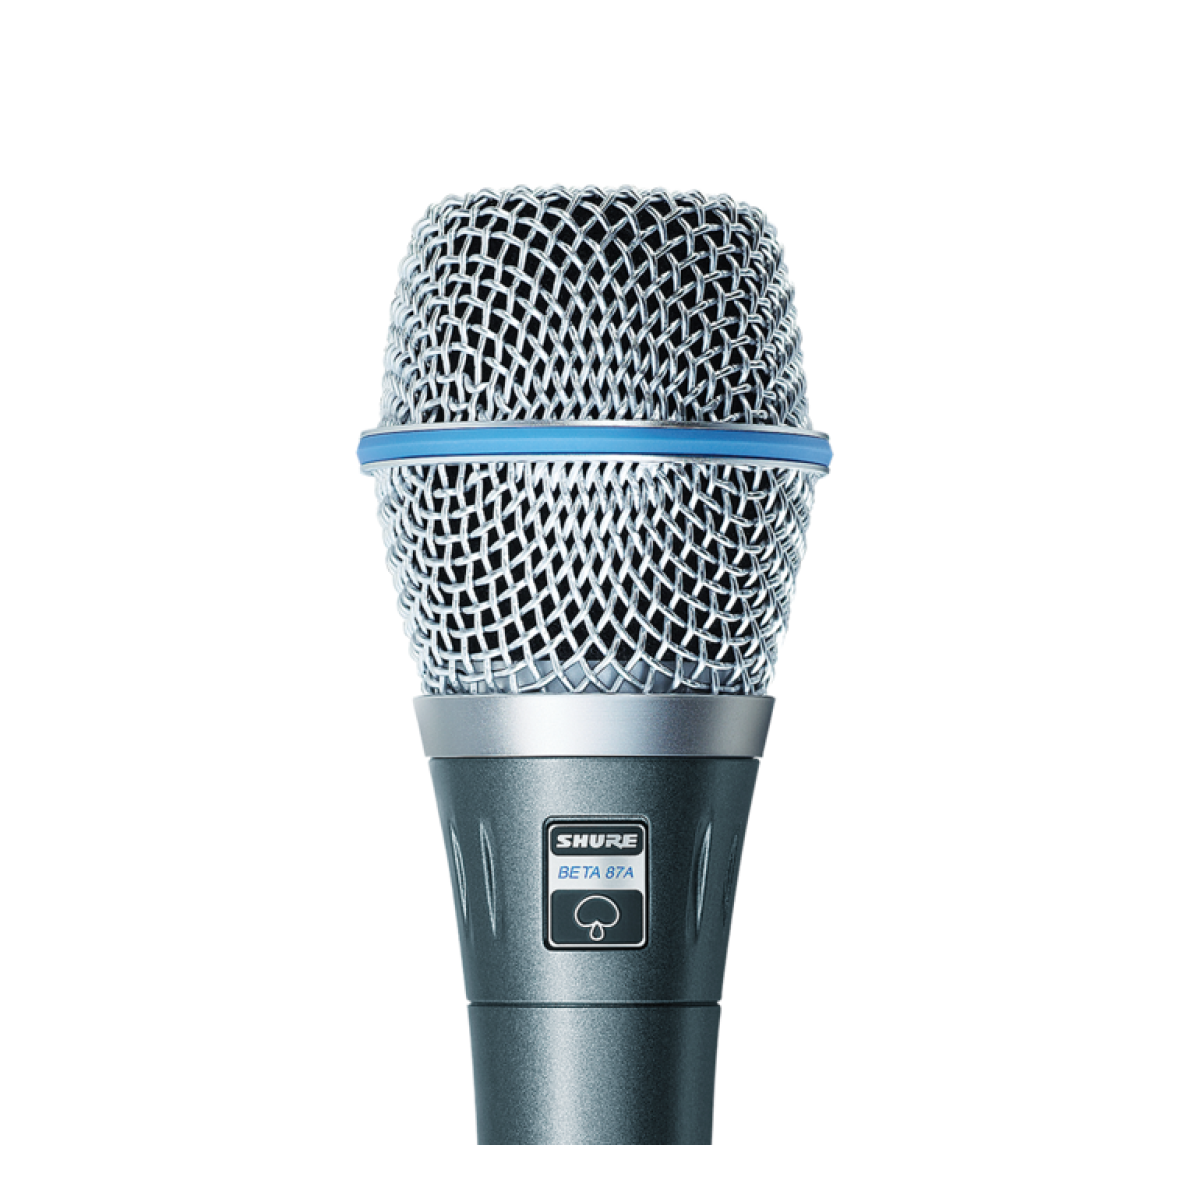 Вокальная shure. Микрофон Shure (Beta 87c). Shure Beta 87a микрофон вокальный конденсаторный. Радиомикрофон Shure Beta 87a. Shure 87.